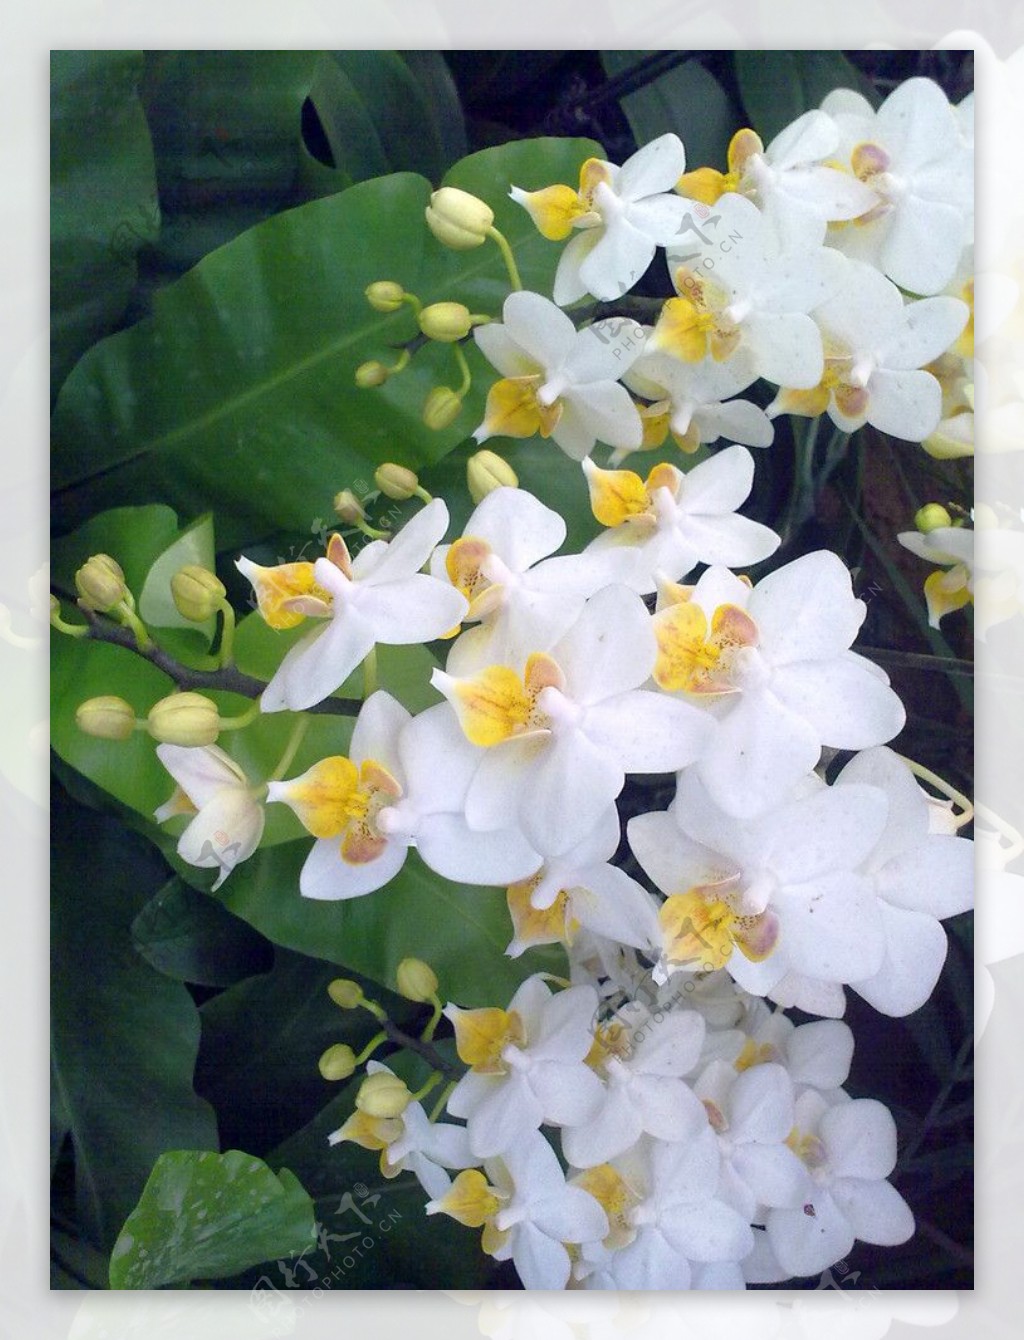 白色蝴蝶兰图片